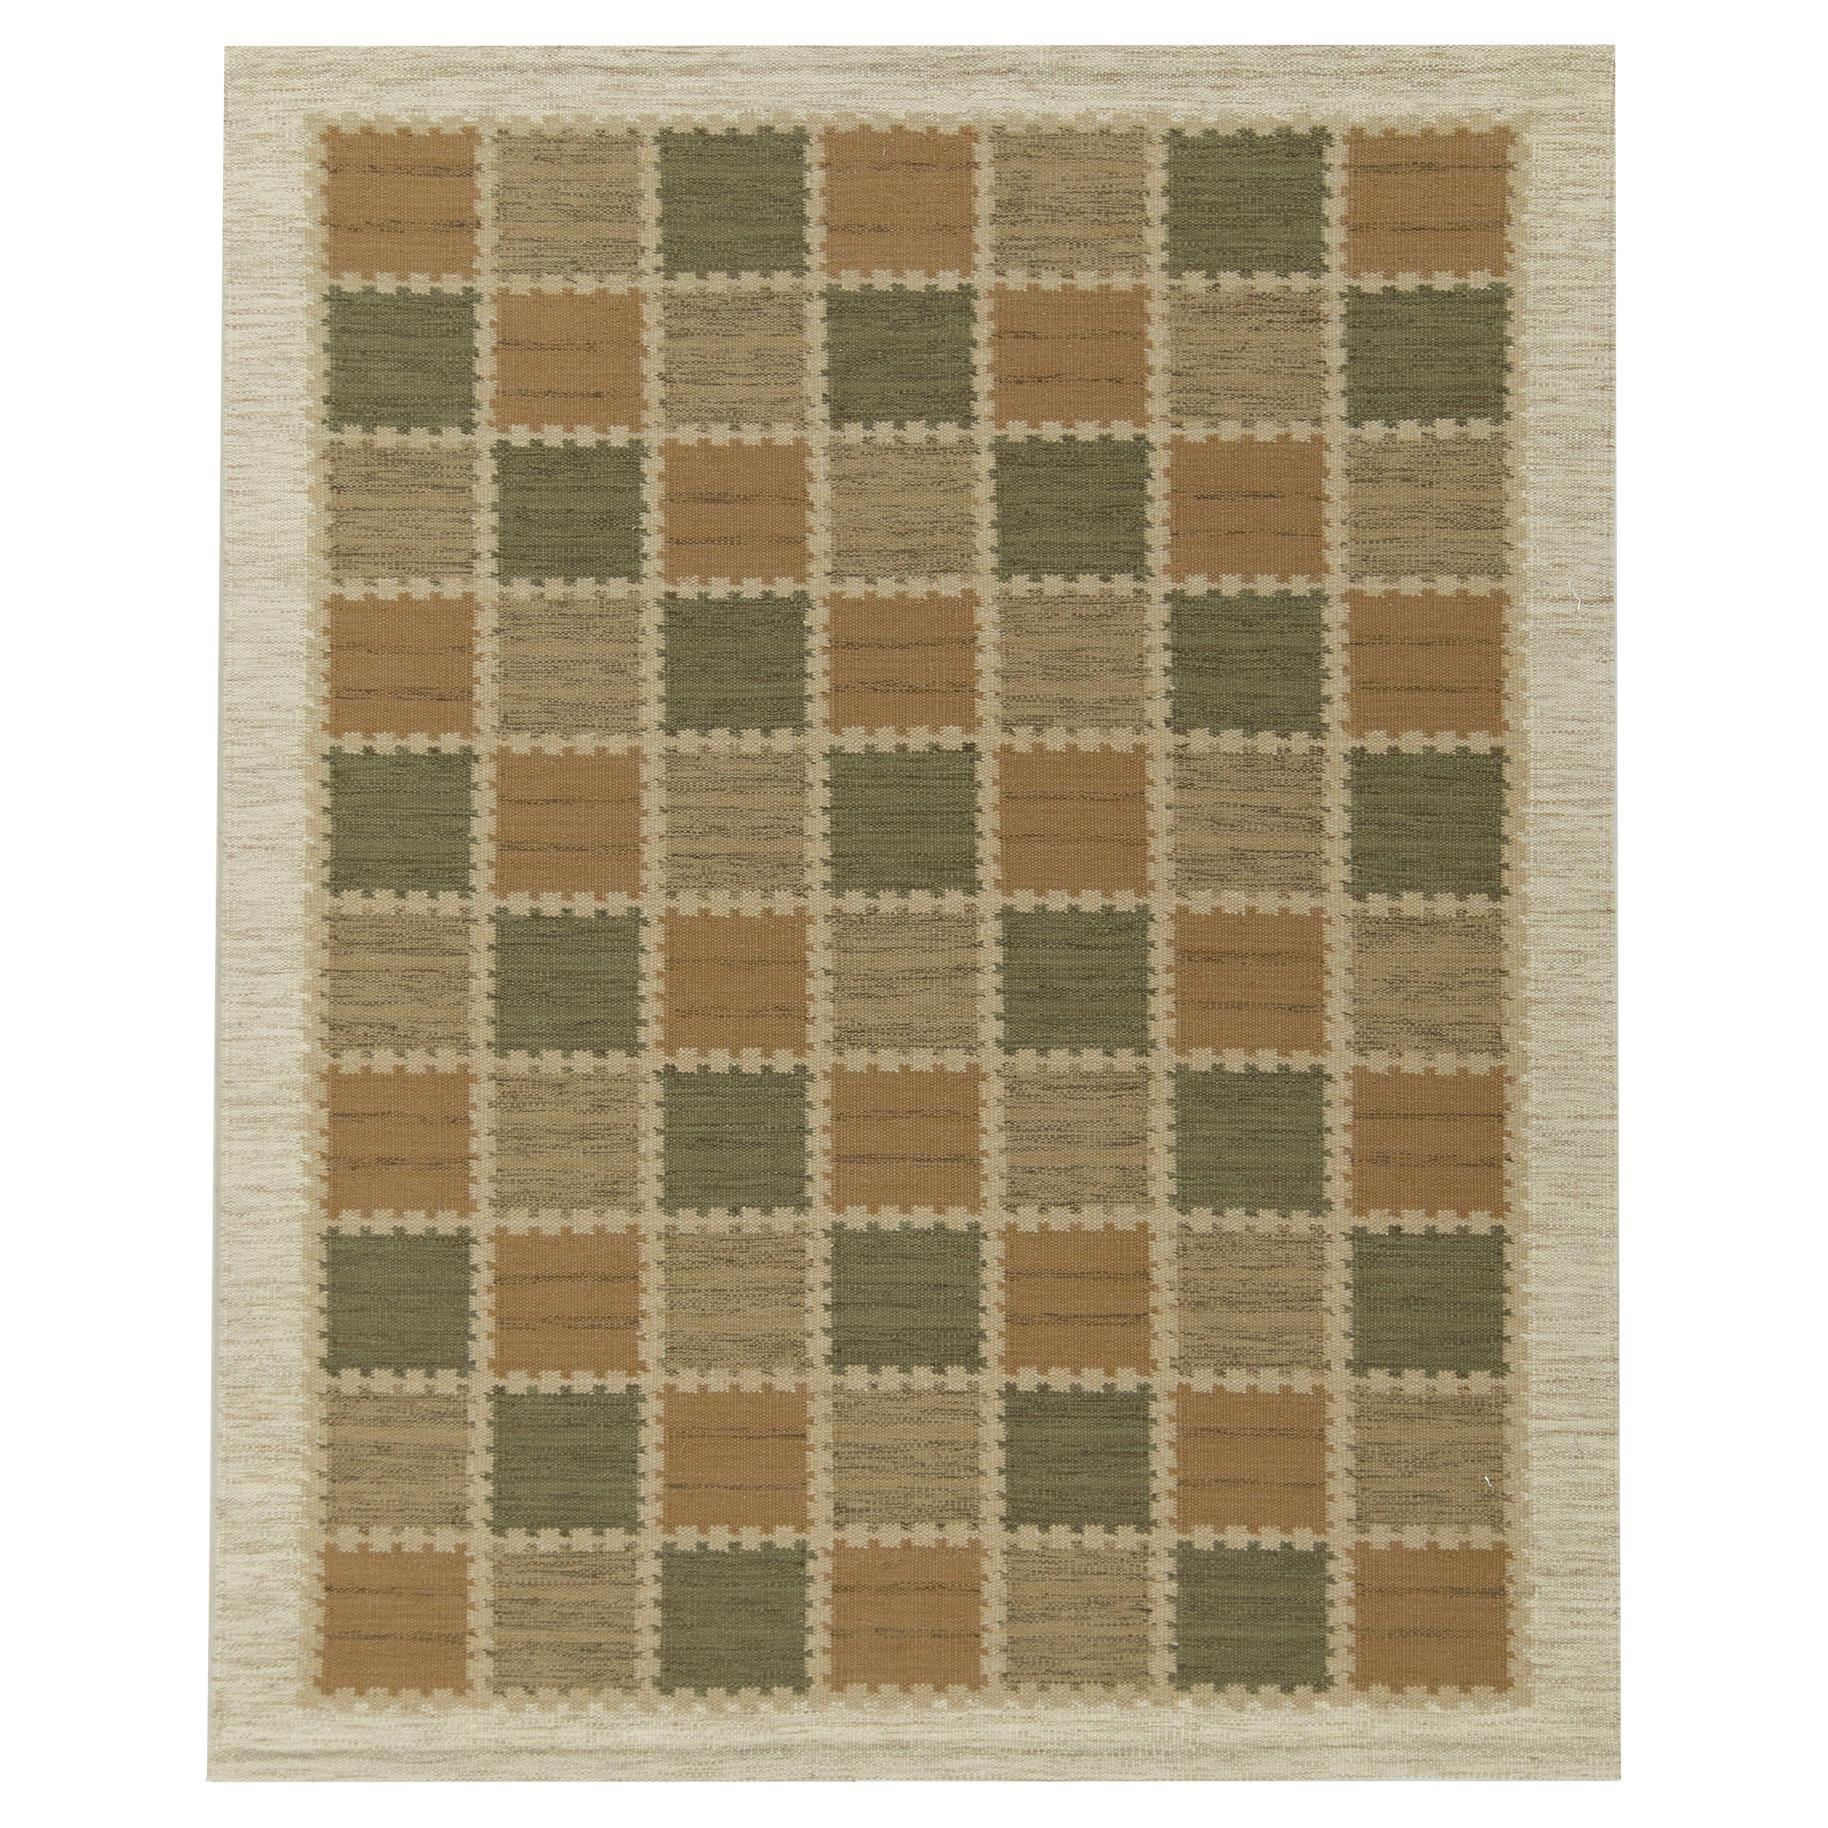 Teppich & Kelim im skandinavischen Stil in Beige-Braun, Grün-Weiß und Weiß